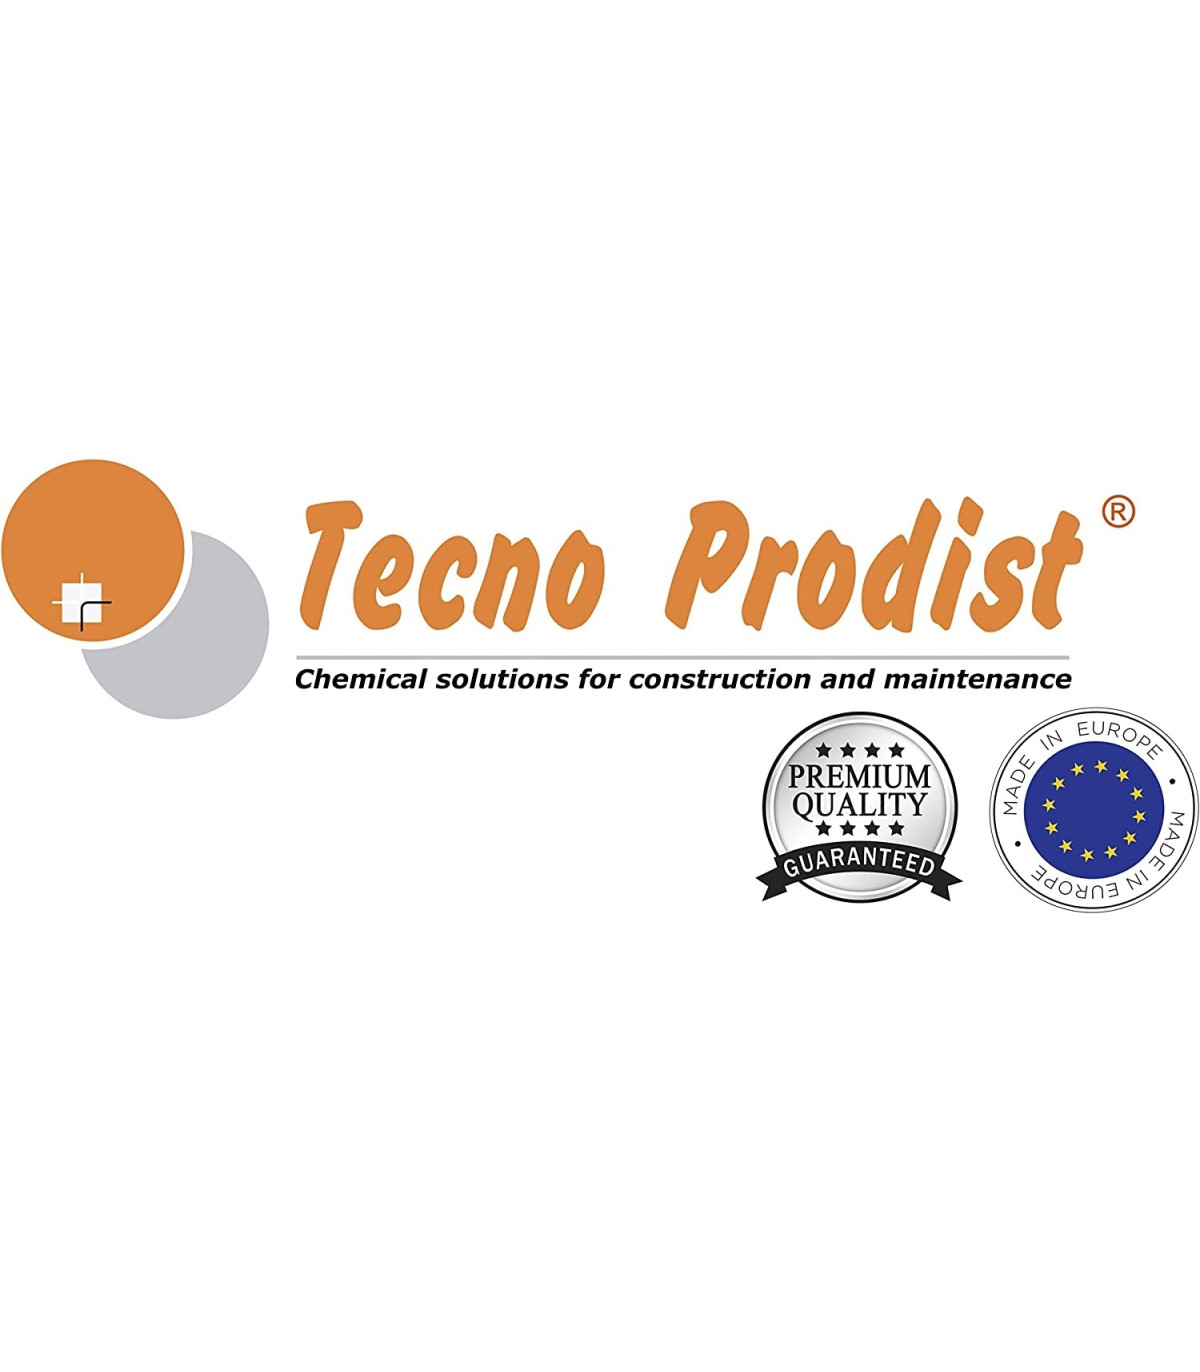 TECNOCLEAN JOINTS de Tecno Prodist - Nettoyant professionnel pour joints de  carrelage, sols, mosaïques et carrelages dans bains